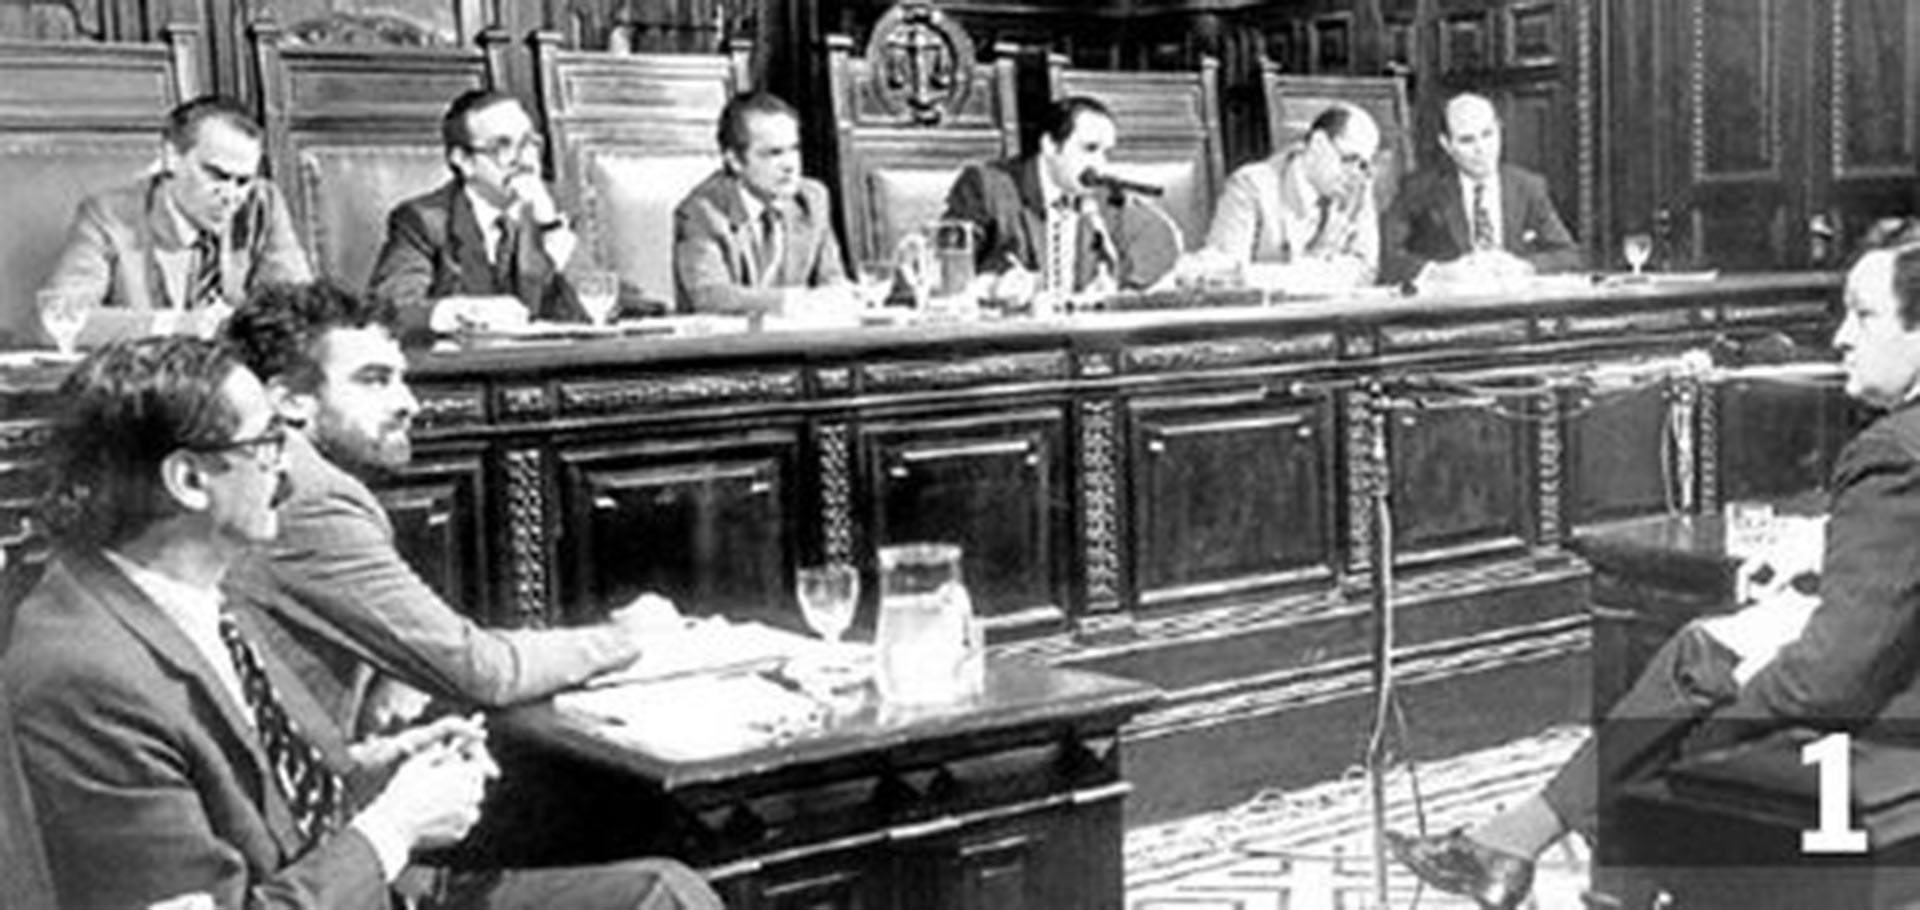 Los jueces eran León Arslanián, presidente de la Cámara ese año, Ricardo Gil Lavedra, Andrés D’Alessio, Jorge Torlasco, Jorge Valerga Aráoz y Guillermo Ledesma